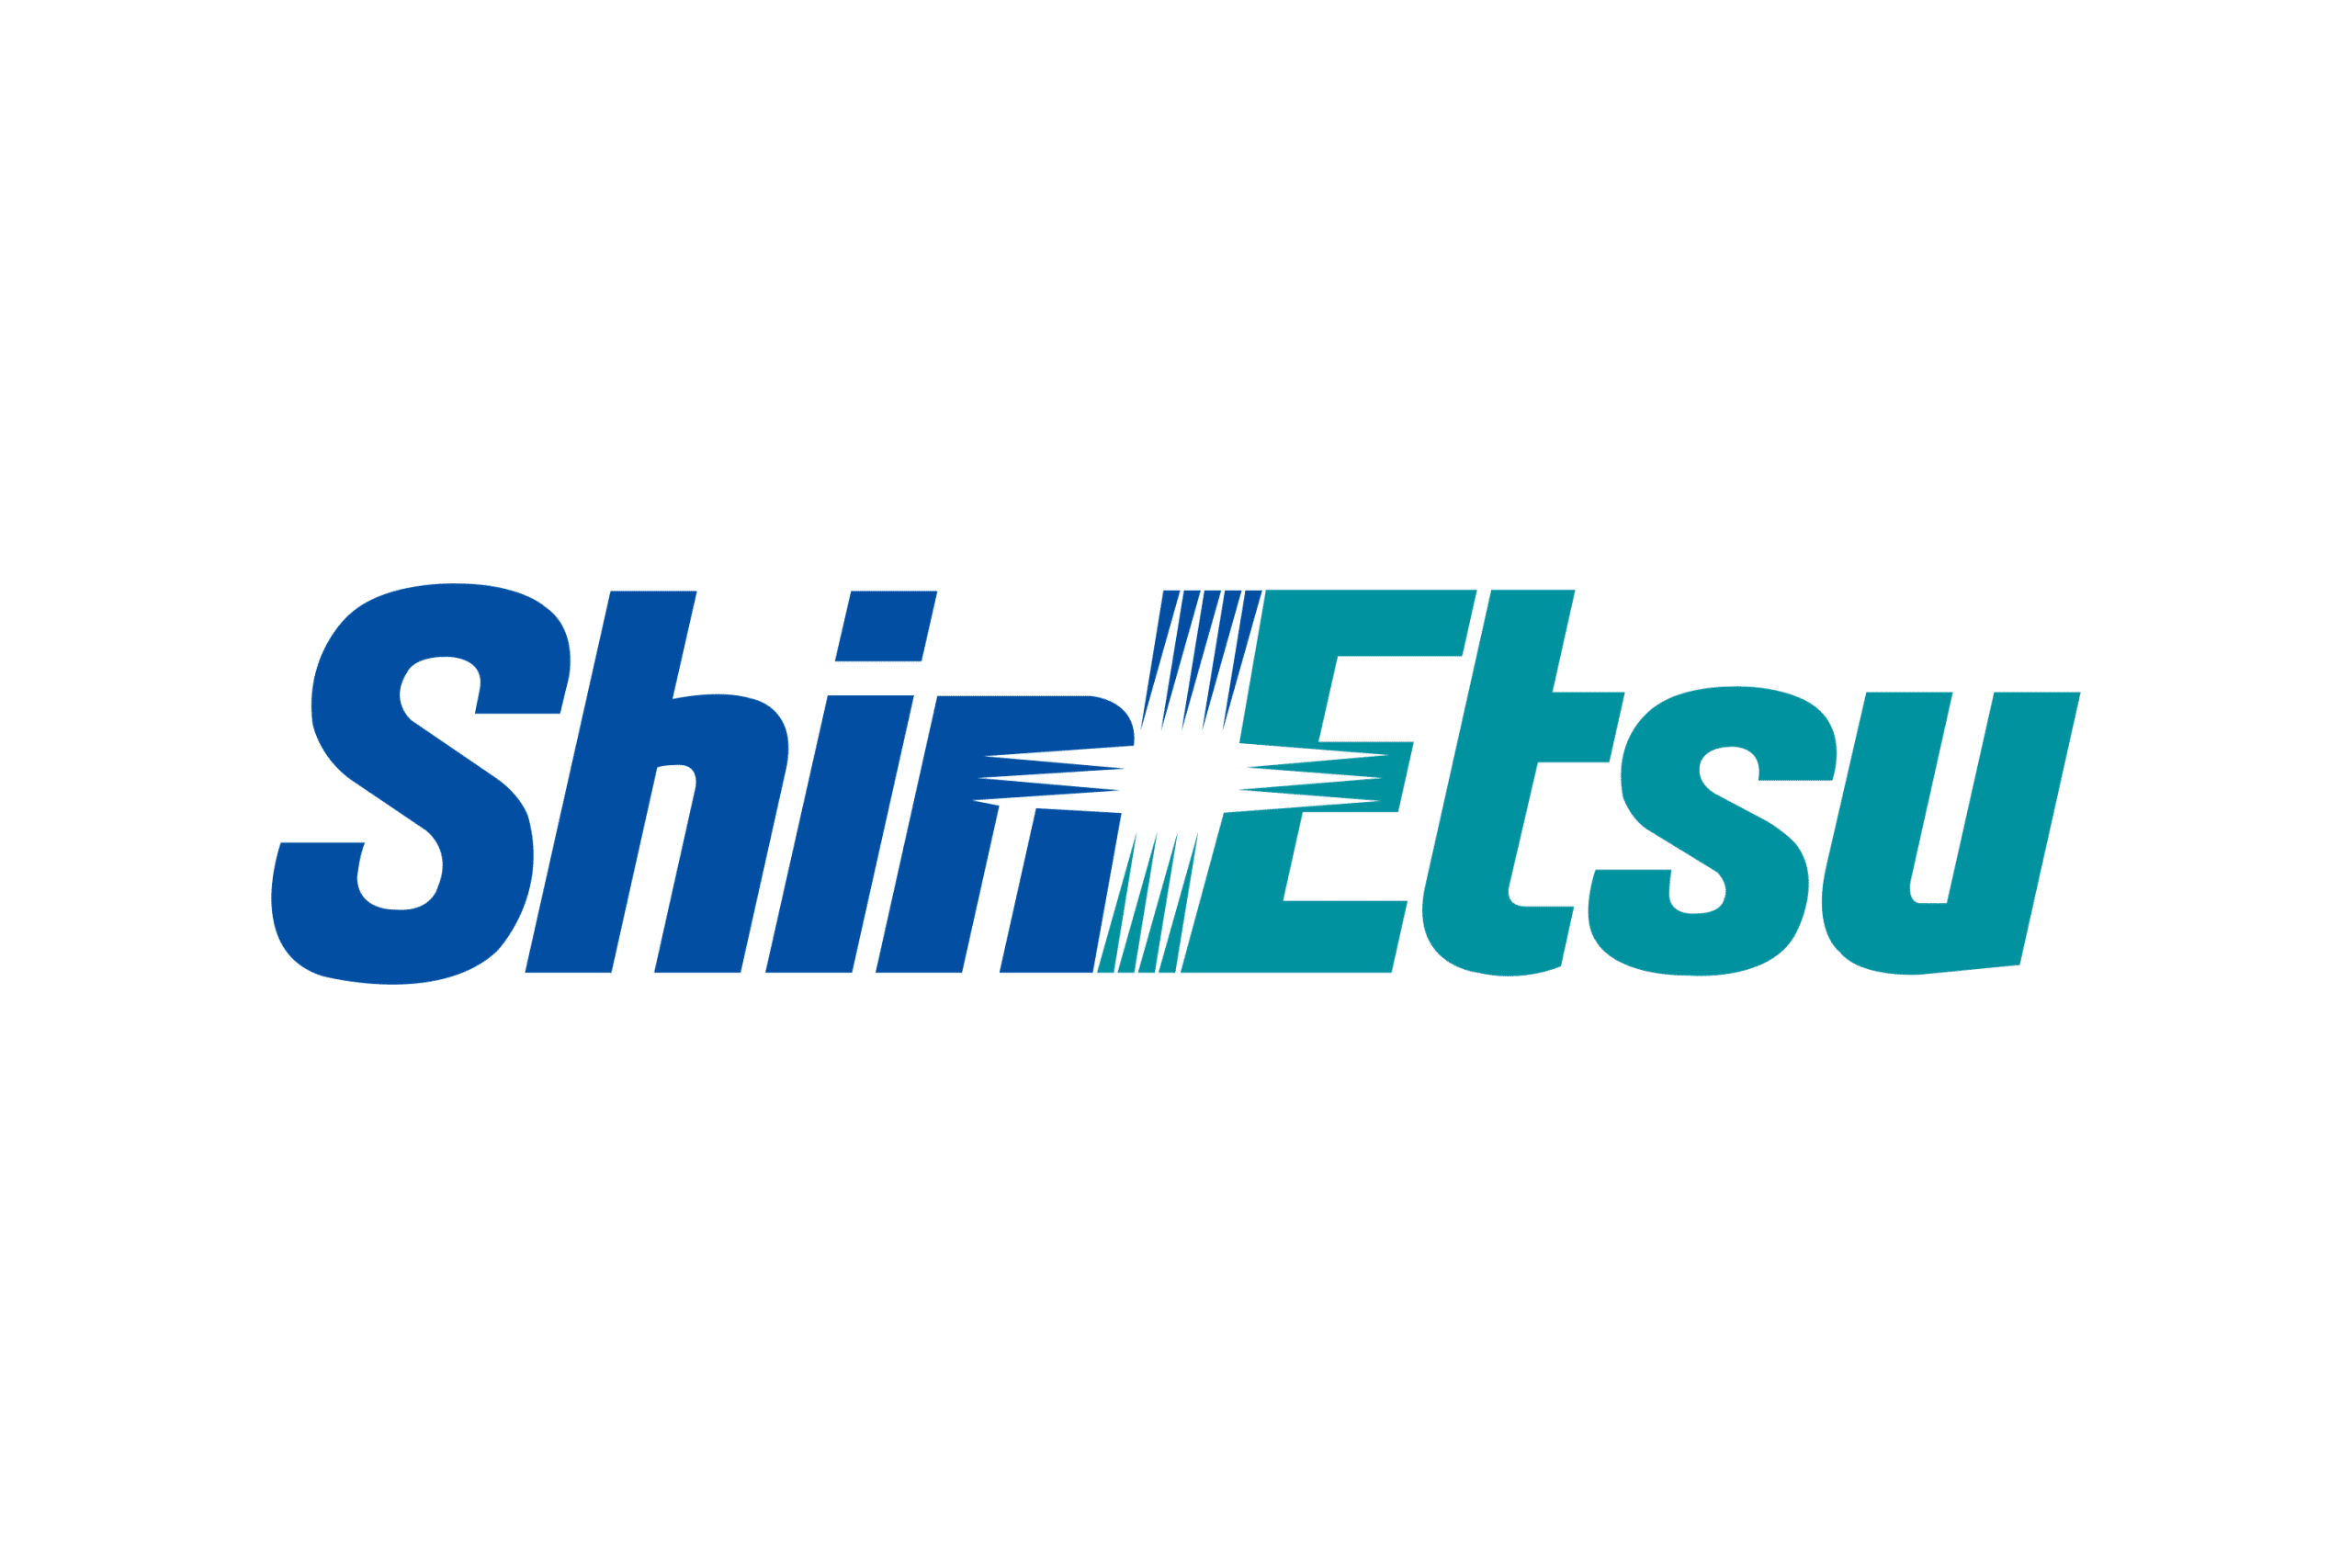 Shin-Etsu_Chemical_logo